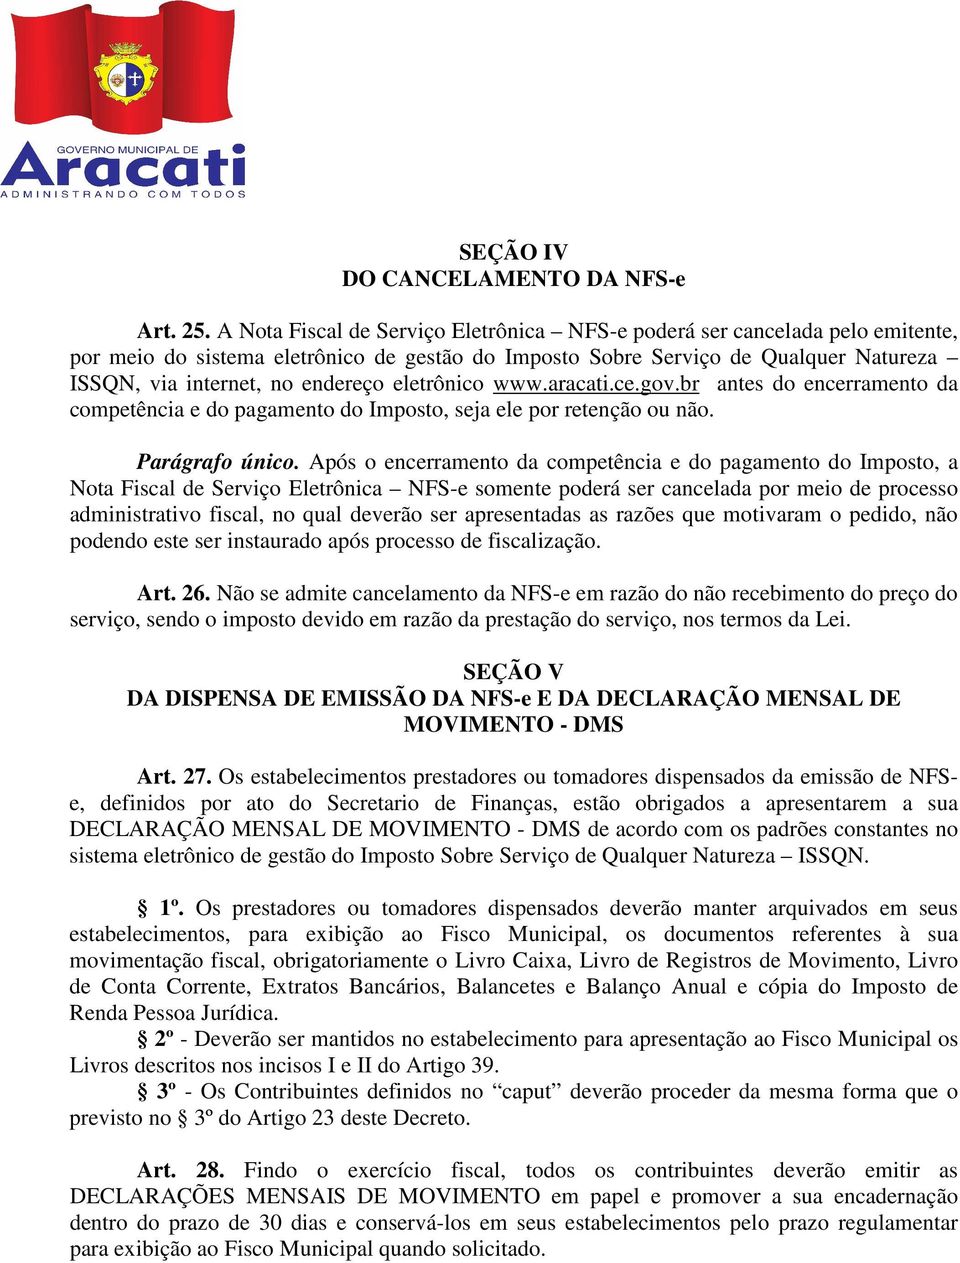 eletrônico www.aracati.ce.gov.br antes do encerramento da competência e do pagamento do Imposto, seja ele por retenção ou não. Parágrafo único.